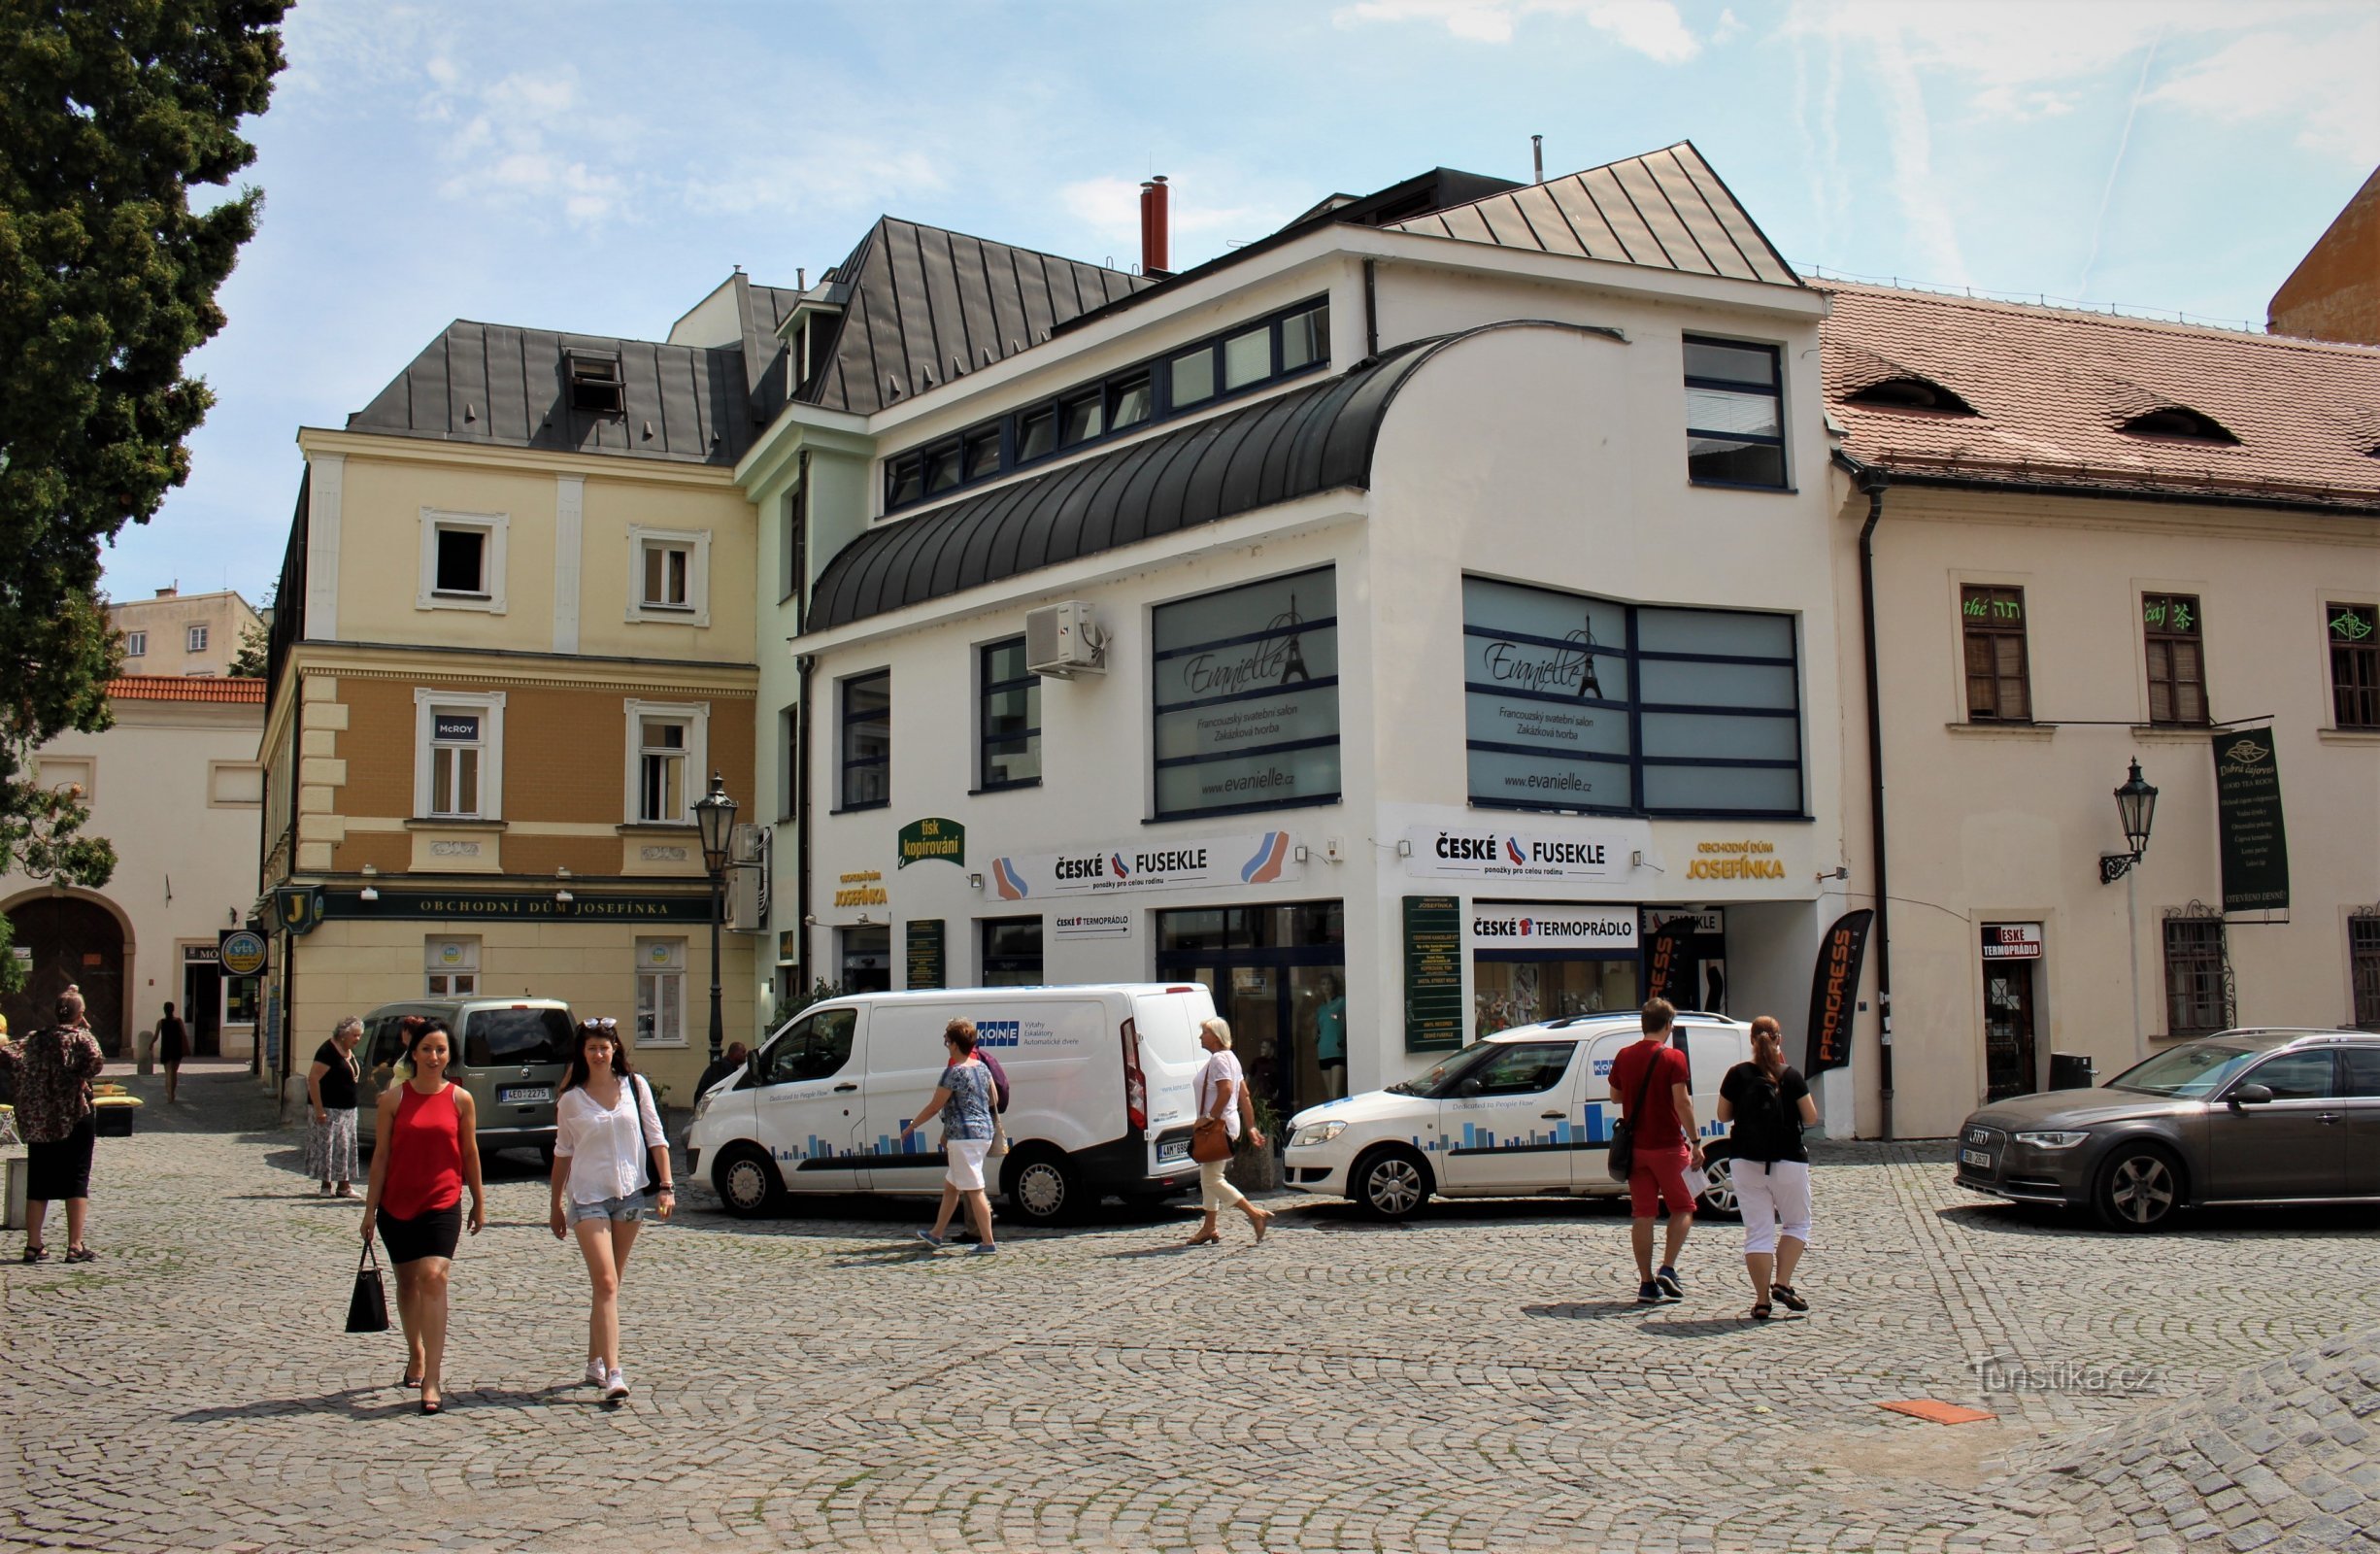 Rímské náměstí with the Josefínka department store